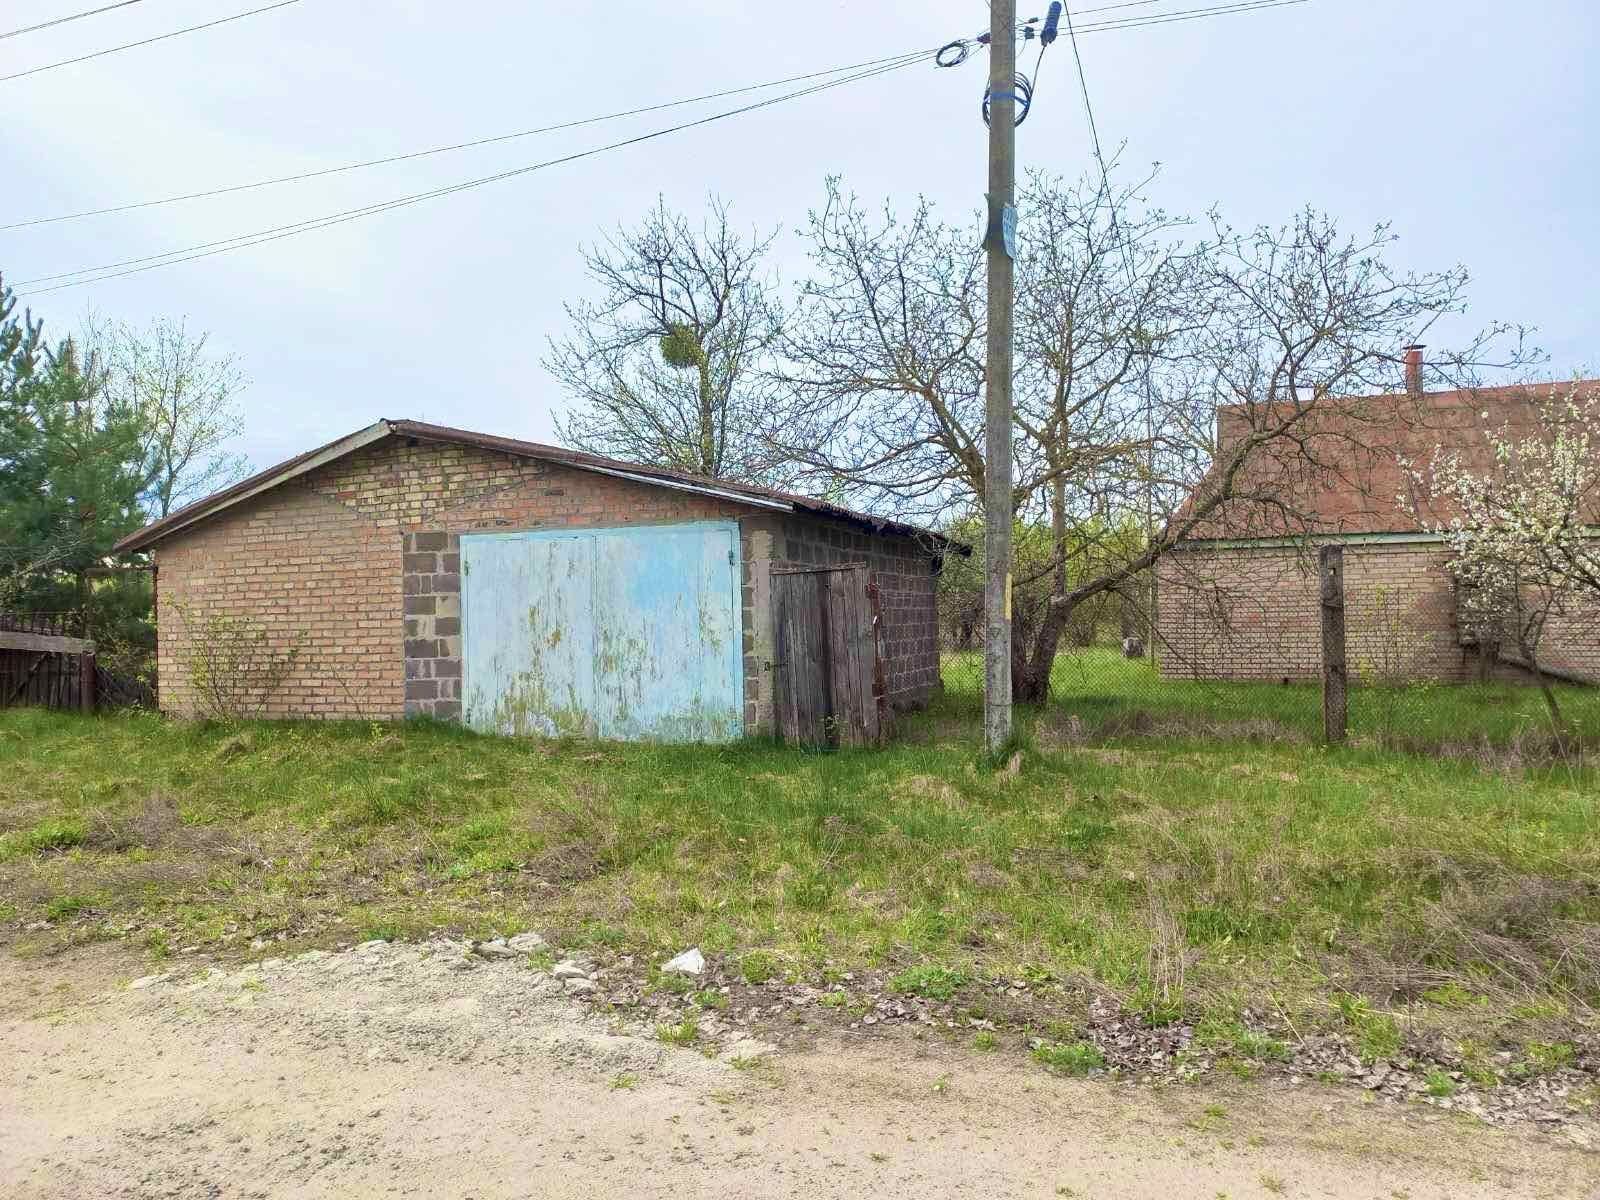 Продам недорого будинок з газом в Гавронщині, біля Макарова